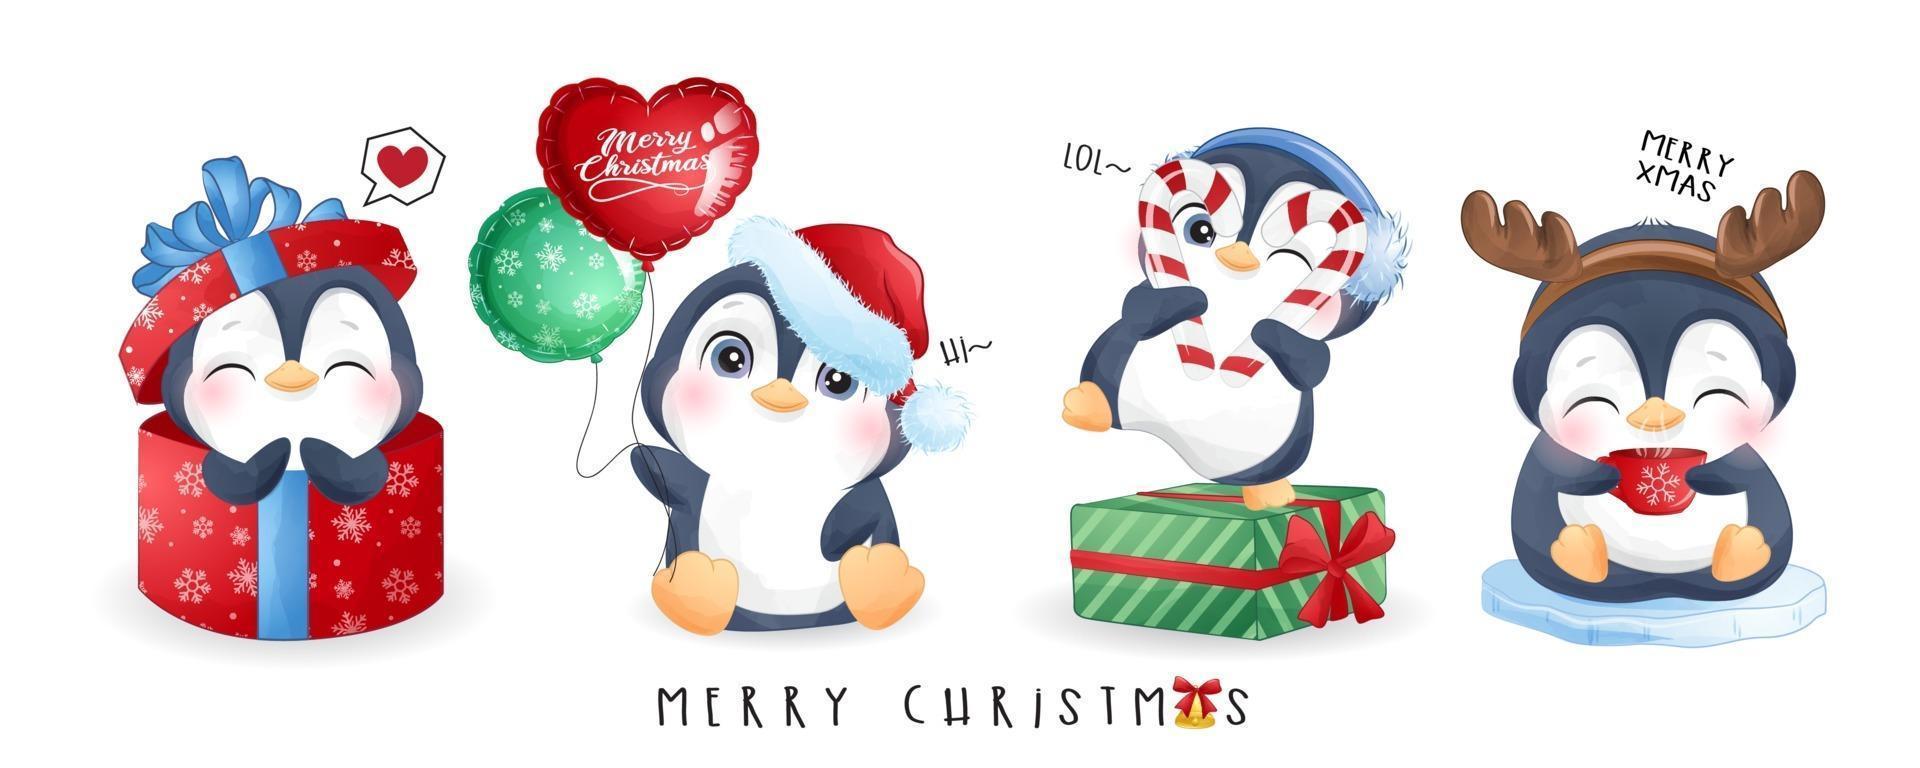 söta klotterpingviner för juldag med akvarellillustration vektor